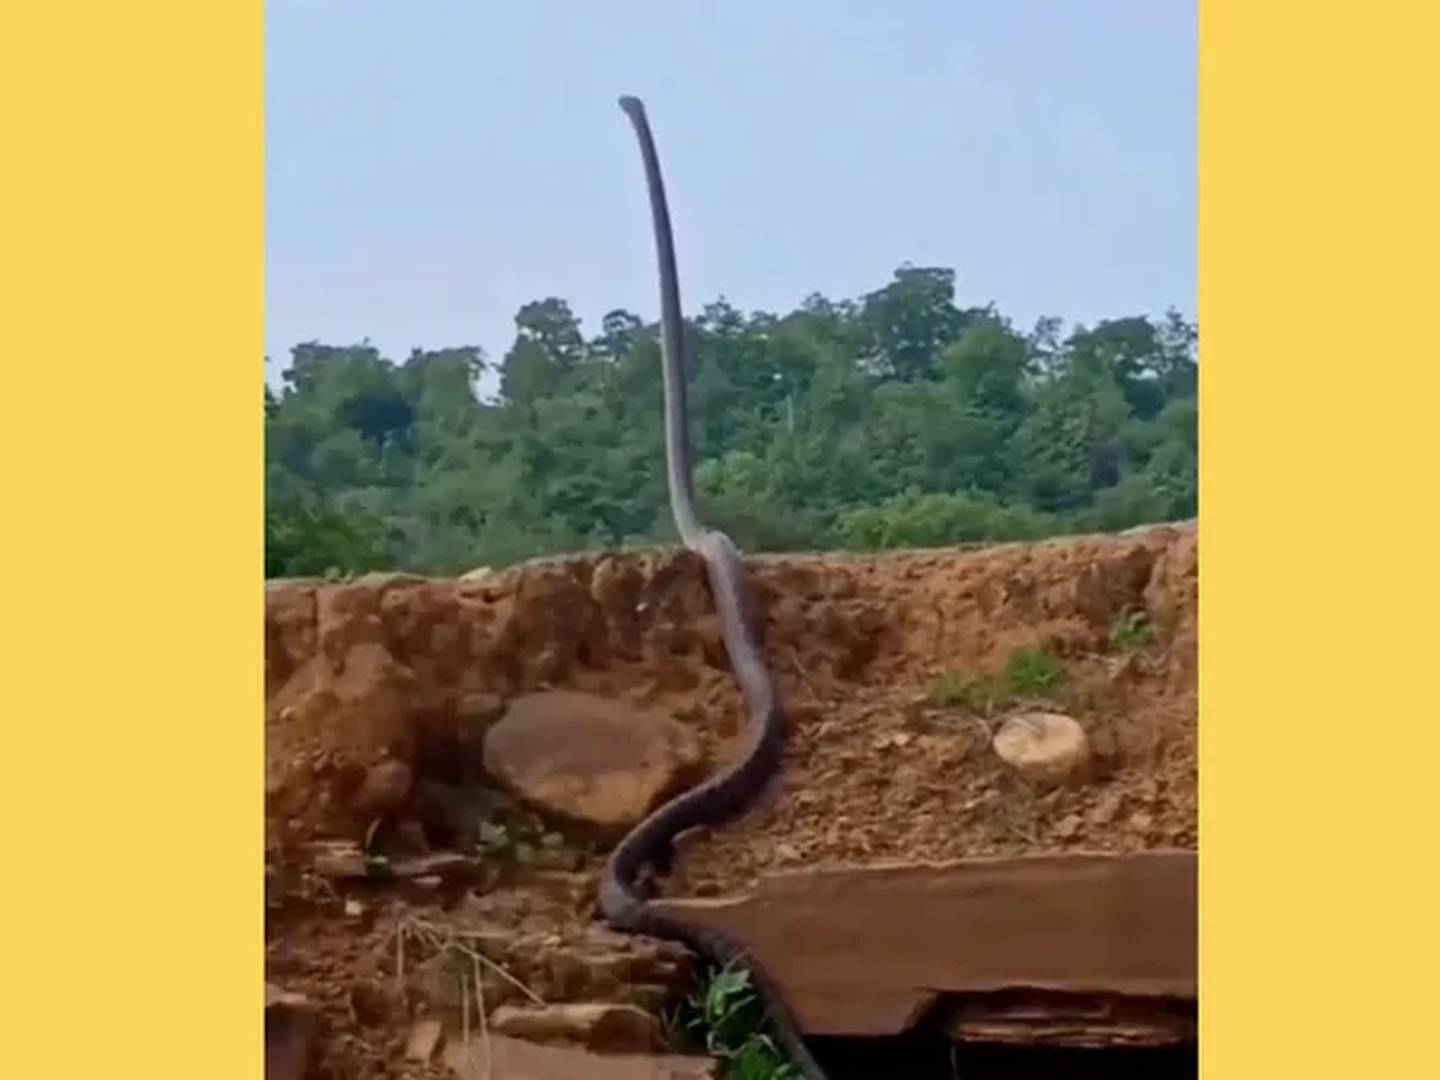 Serpente se arrasta por parede imitando 'jogo da cobrinha' (VÍDEO